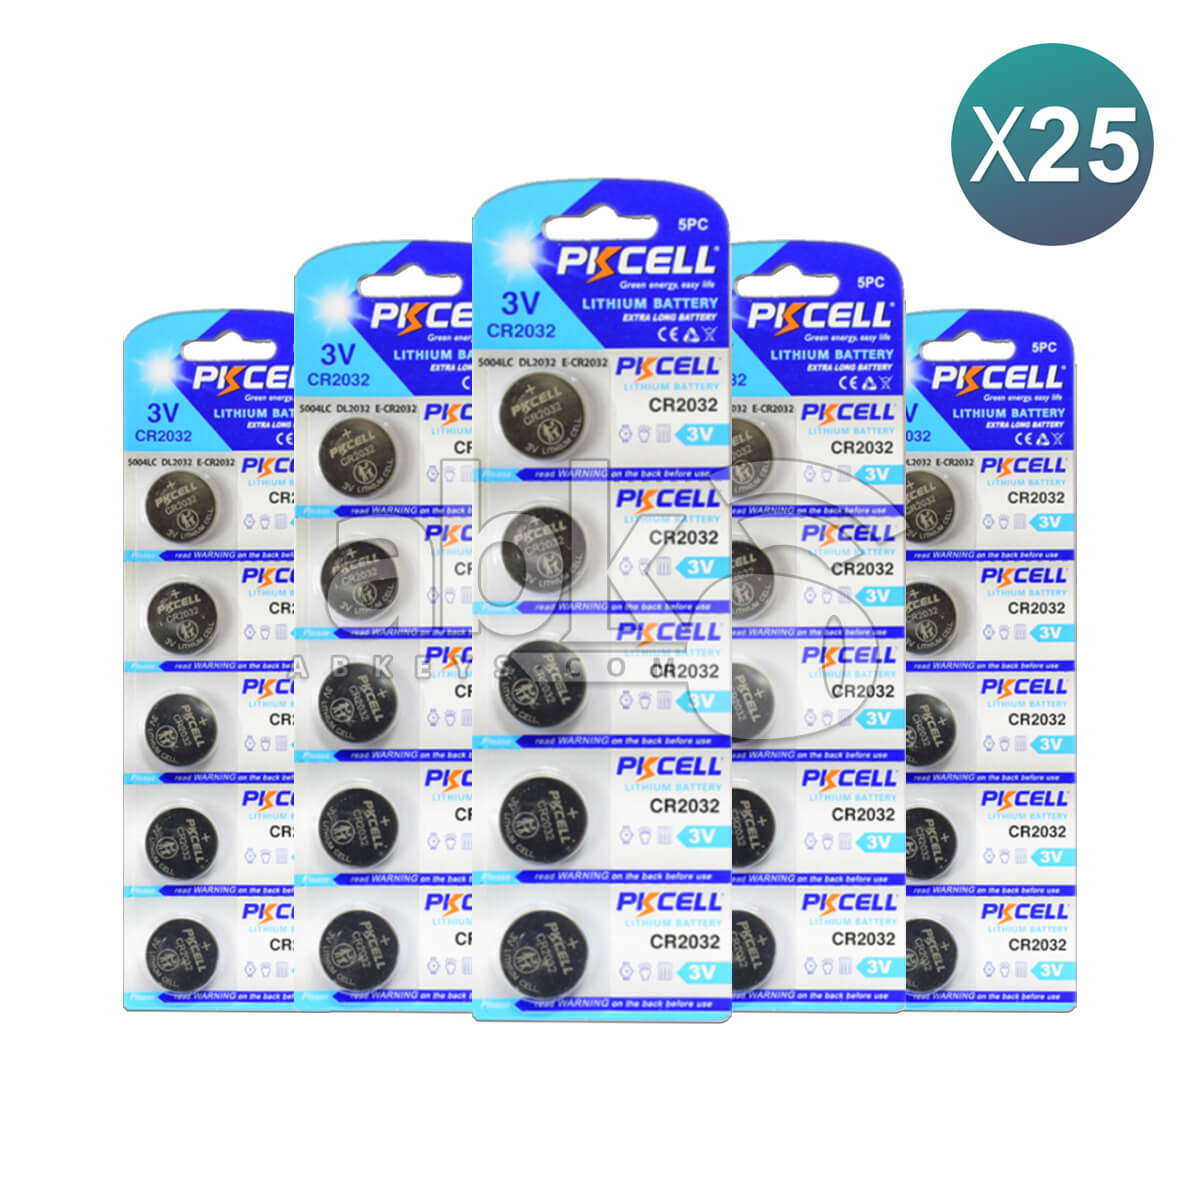 PKCell Remote Battery CR2032 For Remotes & Smart Keys 25Pcs Bundle = 125 Batteries Offer -